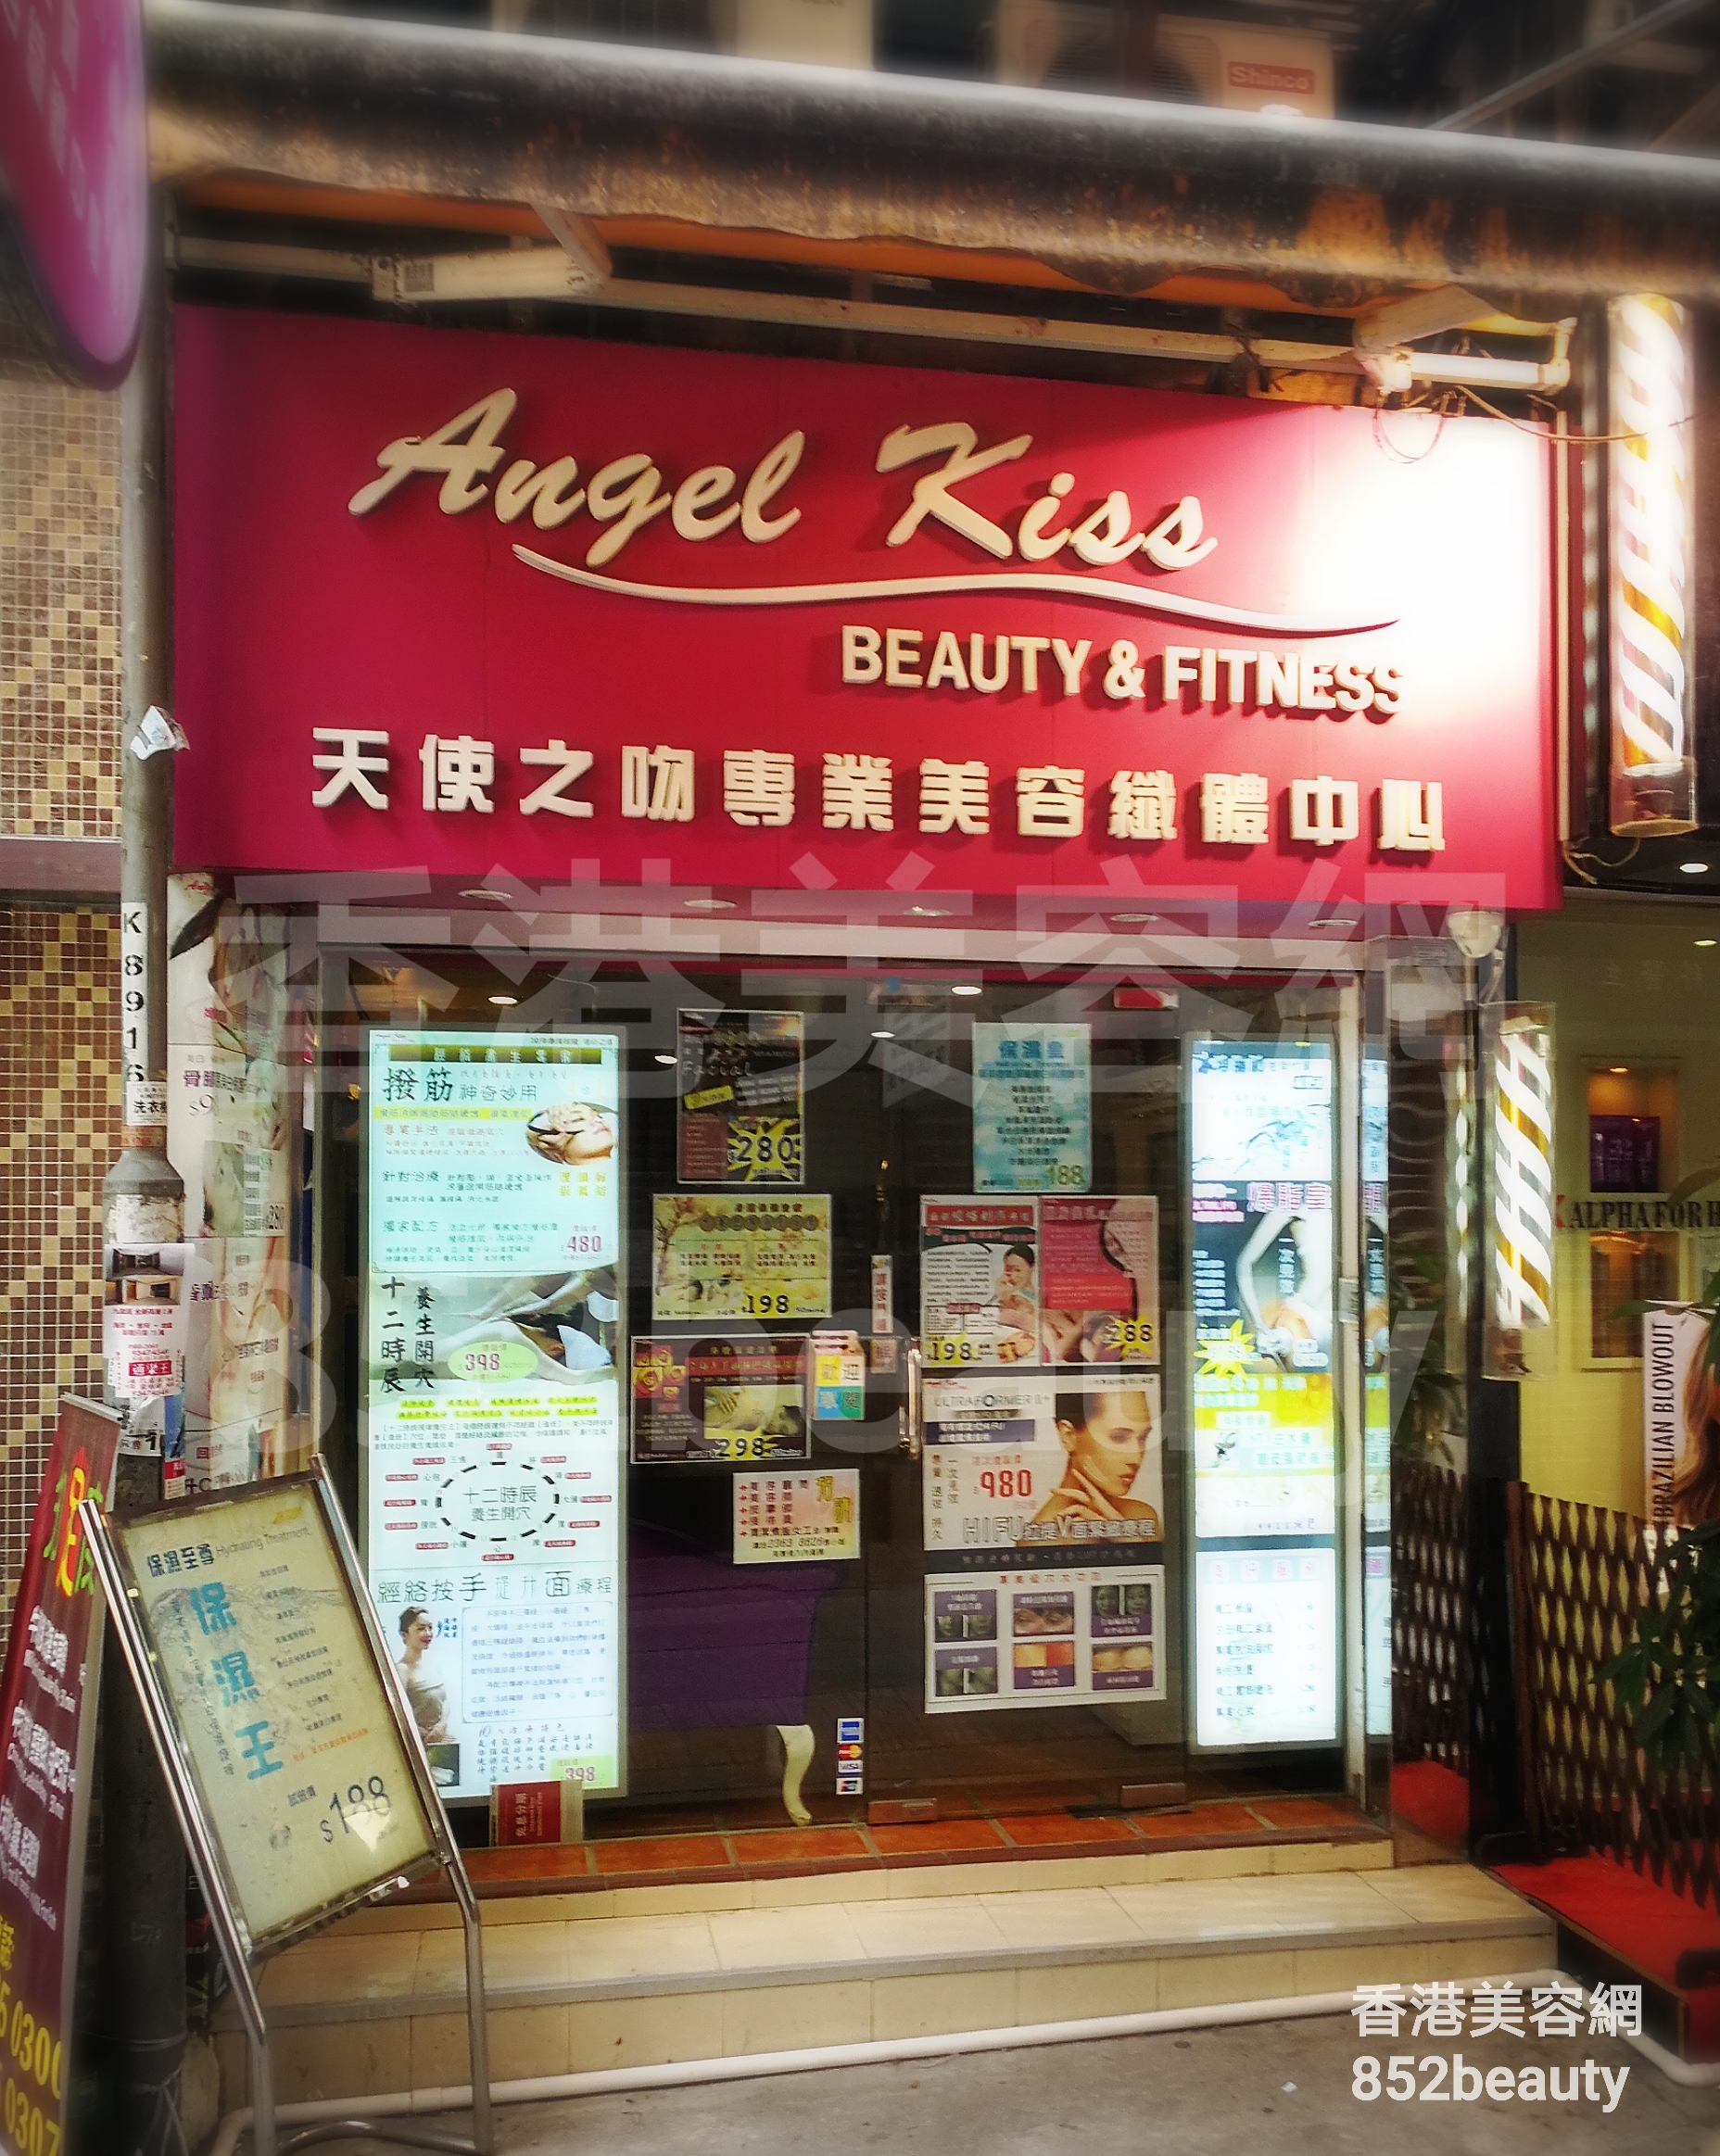 香港美容網 Hong Kong Beauty Salon 美容院 / 美容師: Angel Kiss 天使之吻專業美容纖體中心 (總店)